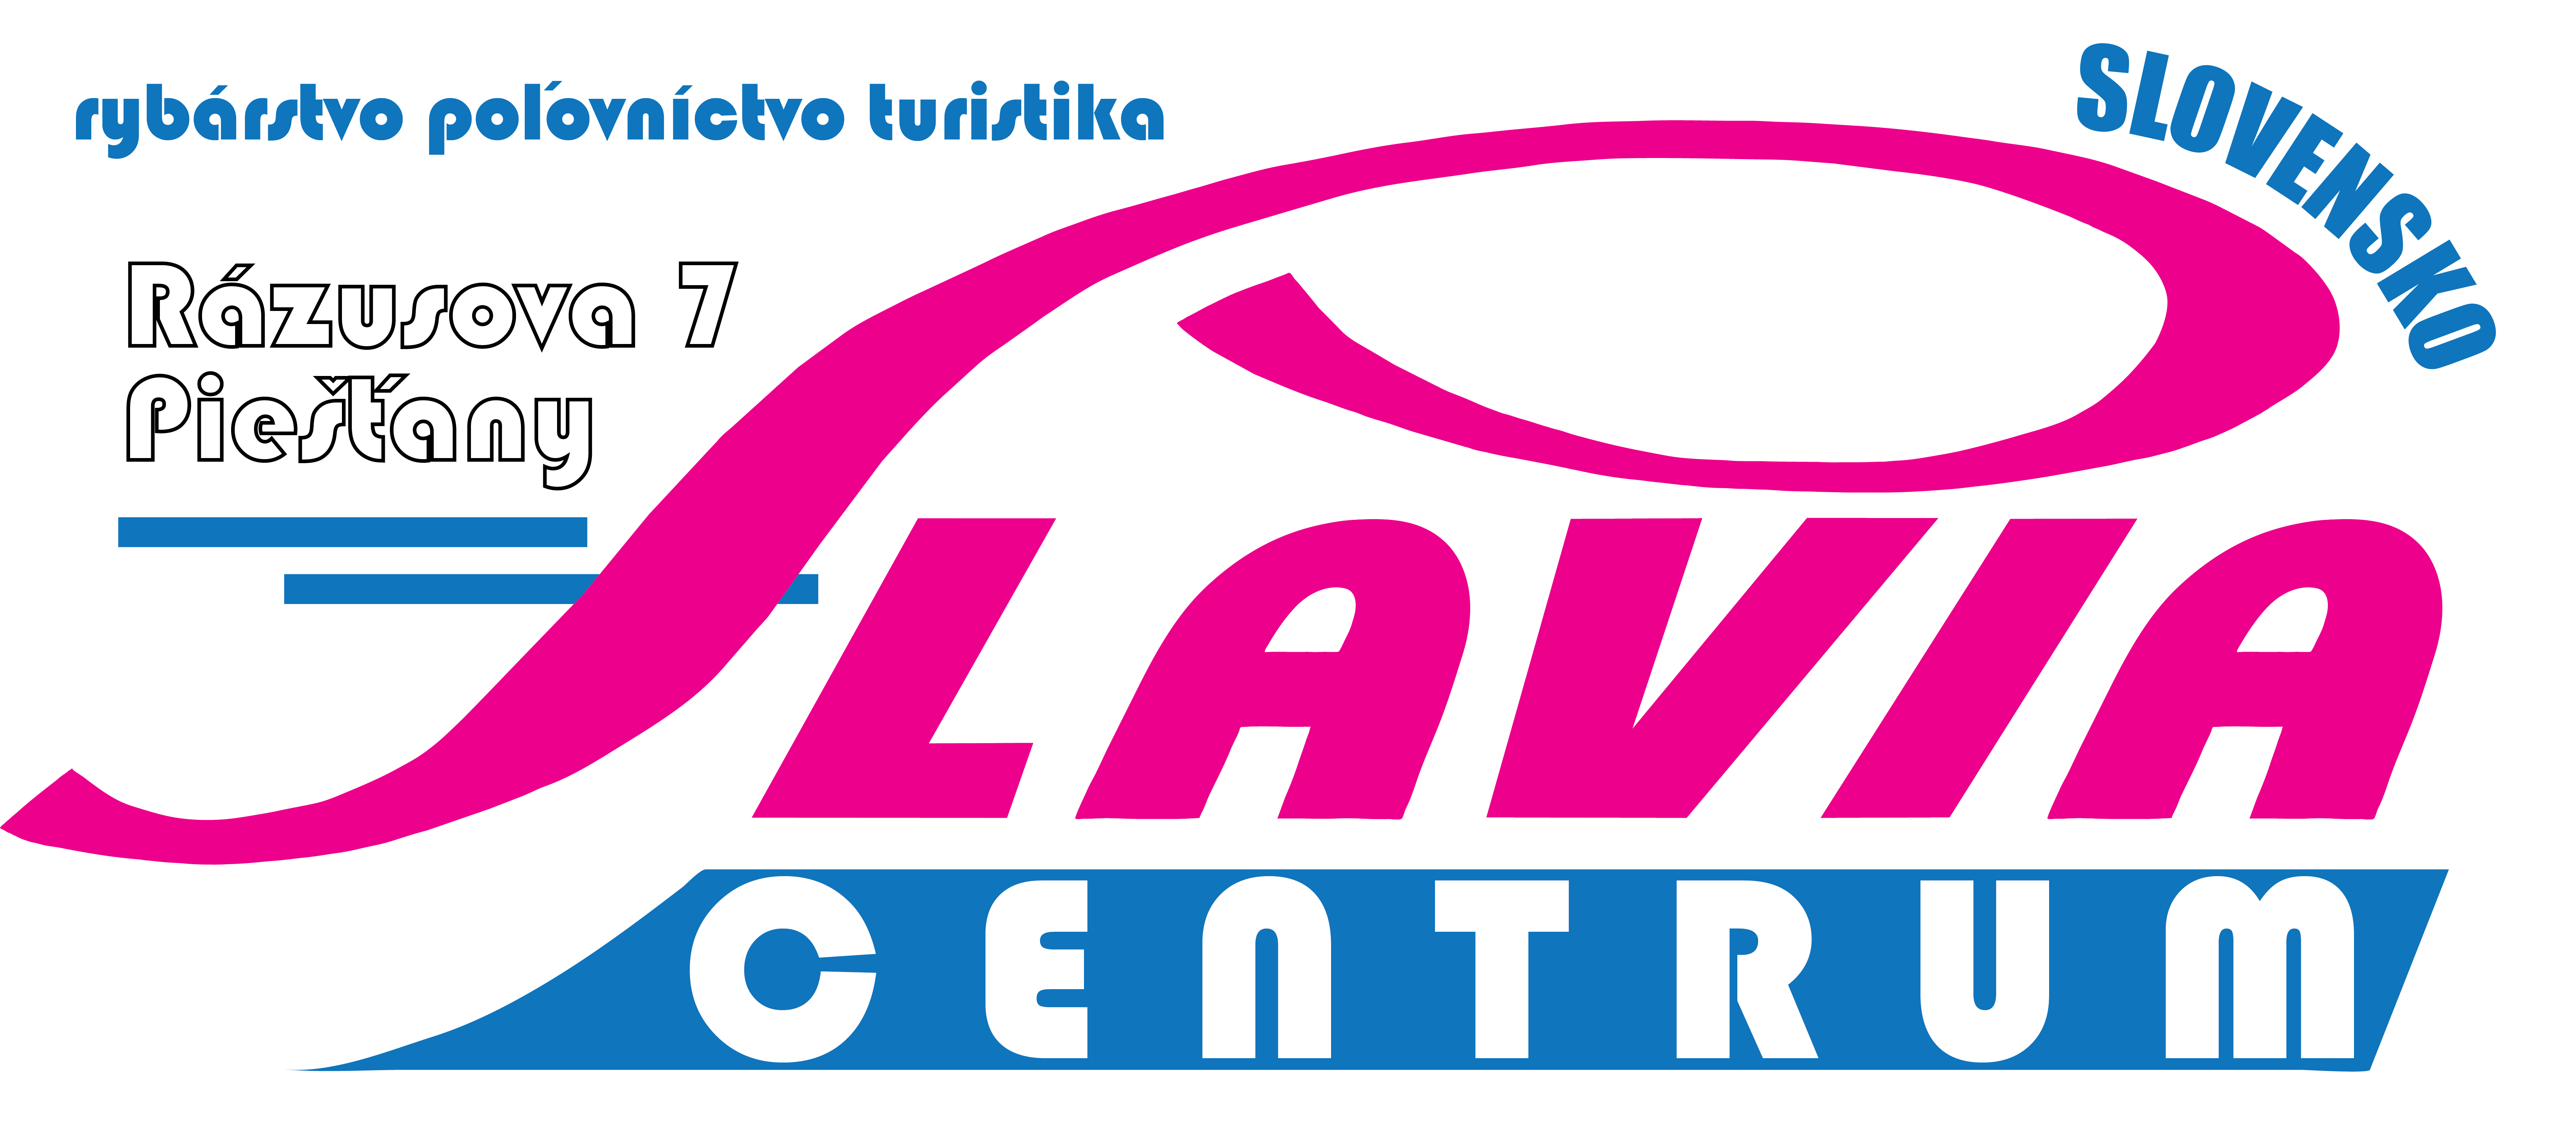 logo_slavia_rybarske_potreby